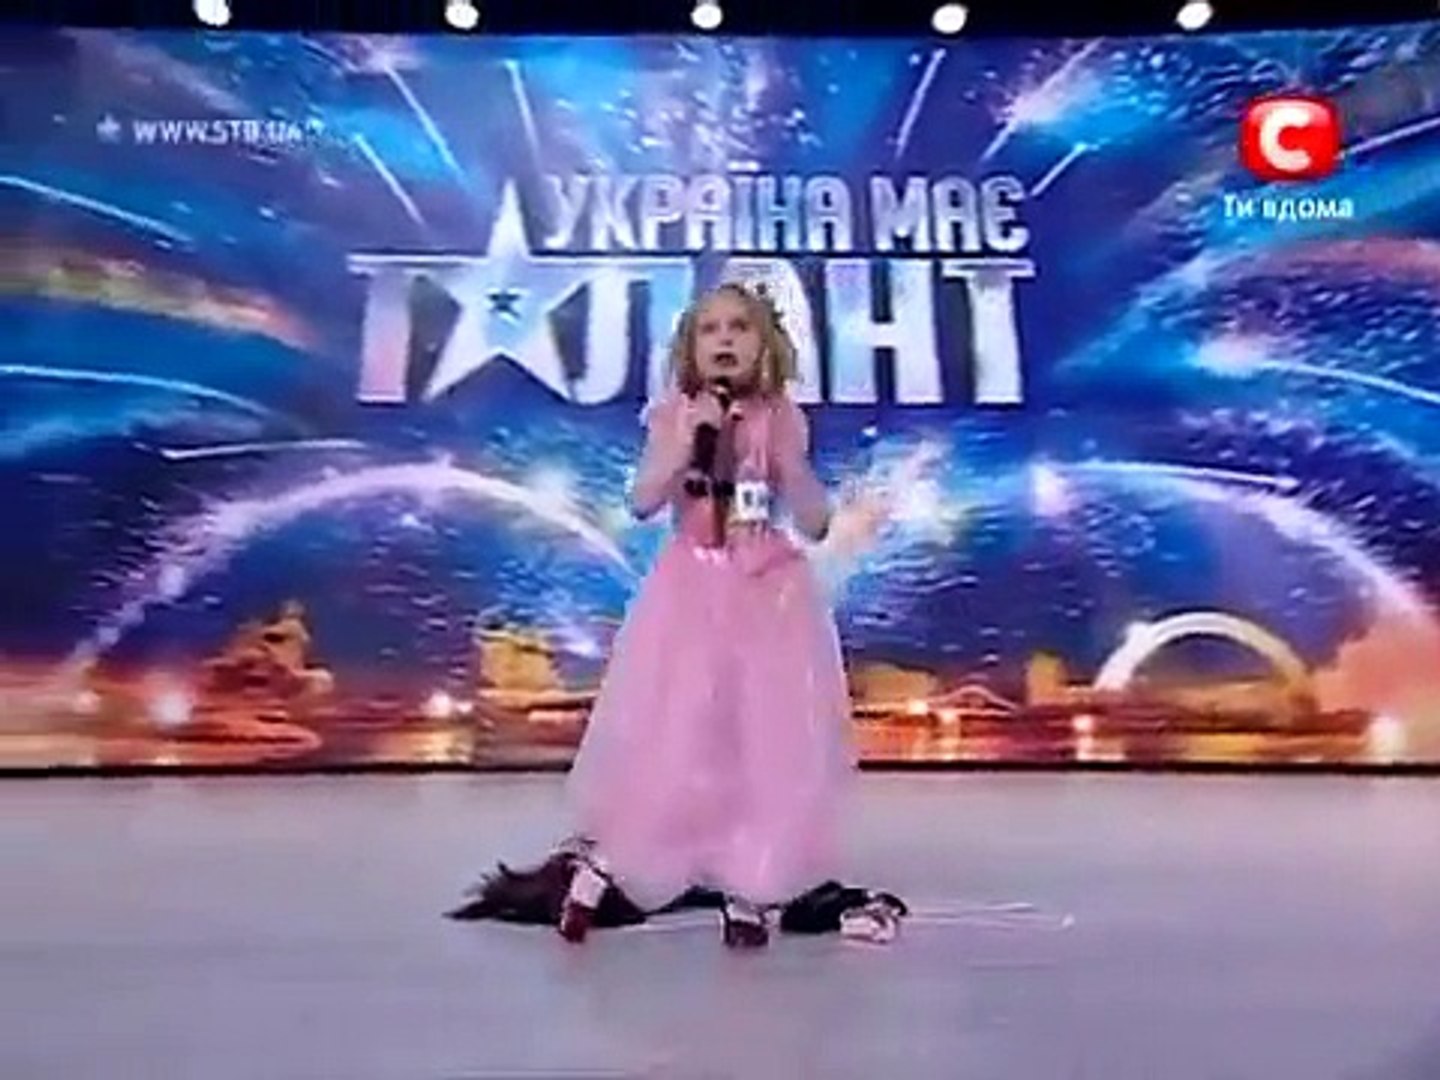 Україна має талант 2 - Анастасия Михайленко (Харьков)